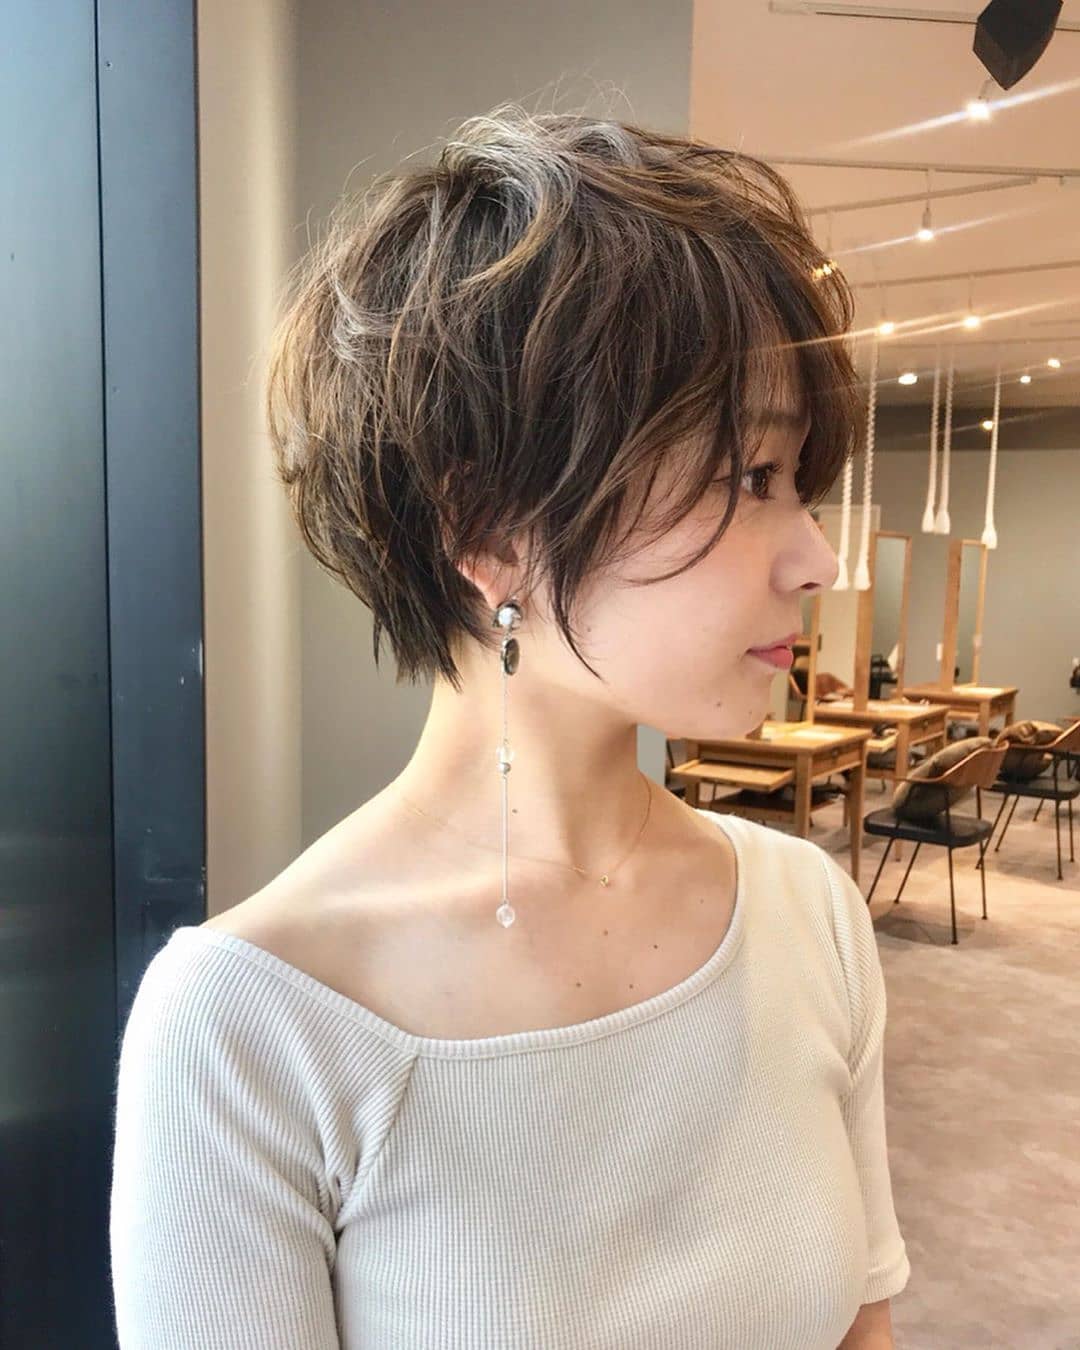 Khám phá những kiểu cắt tóc ngắn đẹp và duyên dáng tại Hà Nội, tạo nên phong cách mới lạ và nổi bật cho bạn. Mỗi kiểu tóc đều mang một ý nghĩa riêng, hãy xem hình để lựa chọn cho mình một phong cách độc đáo và phù hợp nhất.